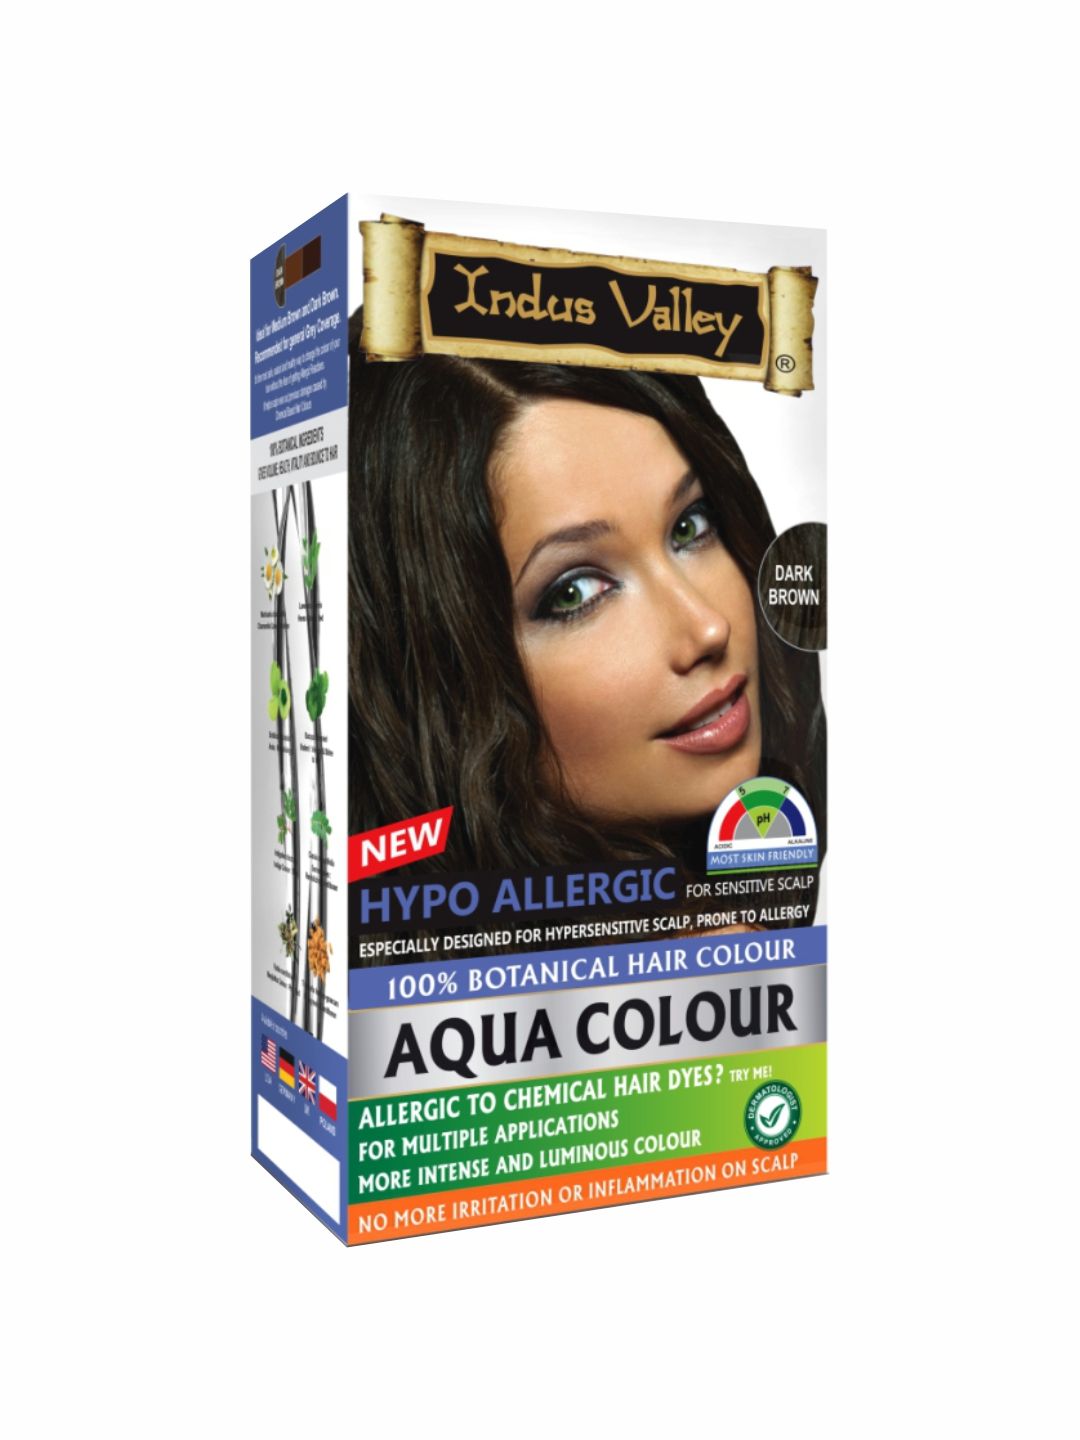 Indus Valley Hypo Allergic Botanical Aqua Hair Colour - Dark Brown Price in India